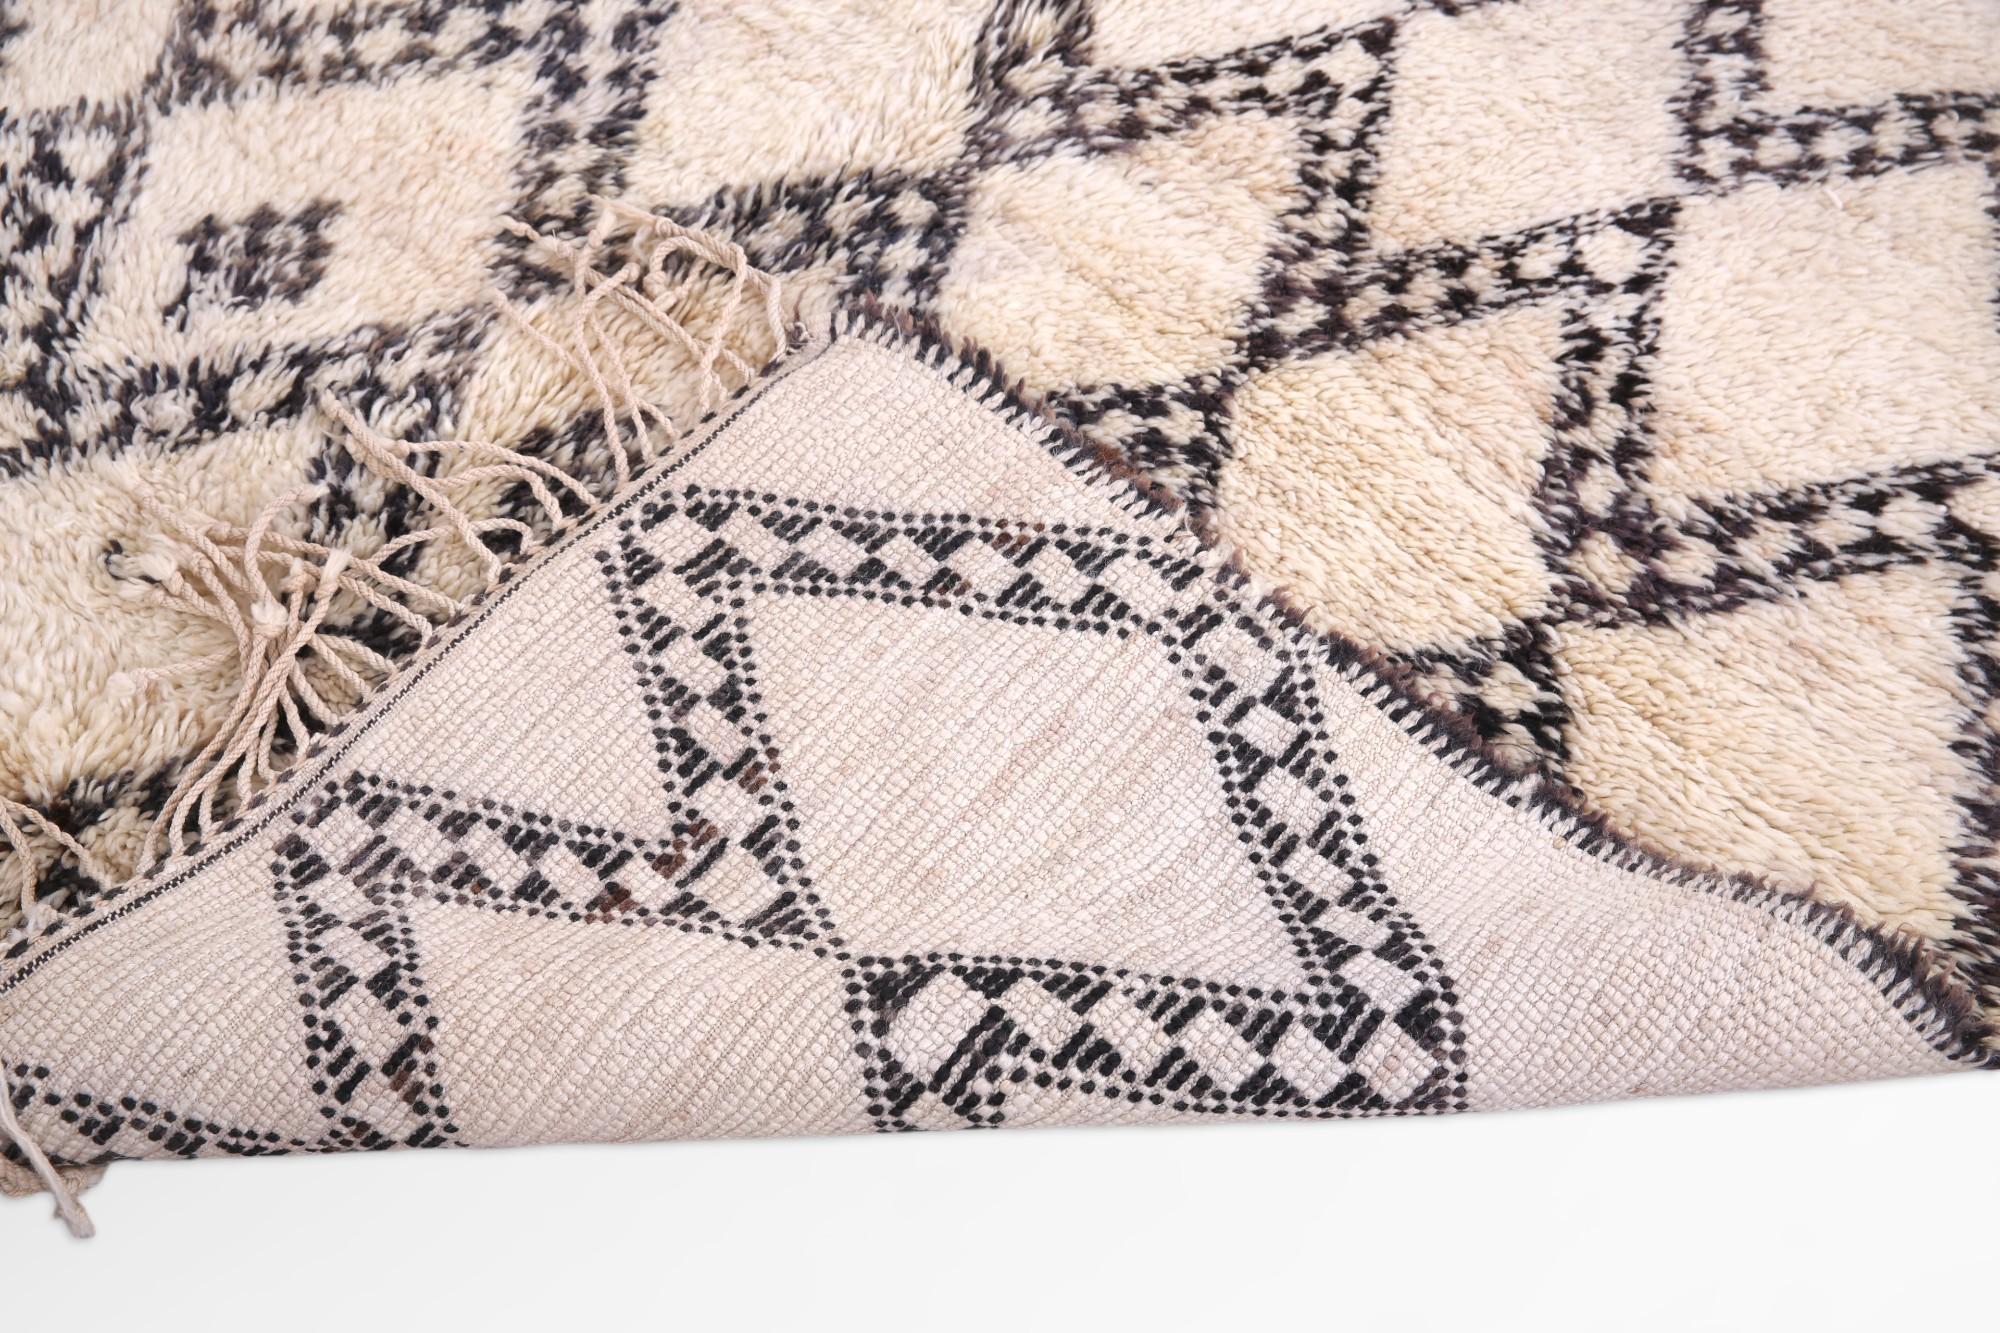 Dieser marokkanische Teppich, der von den Kunsthandwerkern des Beni Ourain-Stammes in sorgfältiger Handarbeit gewebt wurde, ist ein Zeugnis der nomadischen Eleganz und der detaillierten Handwerkskunst seiner Schöpfer. Die kühnen Linien und das